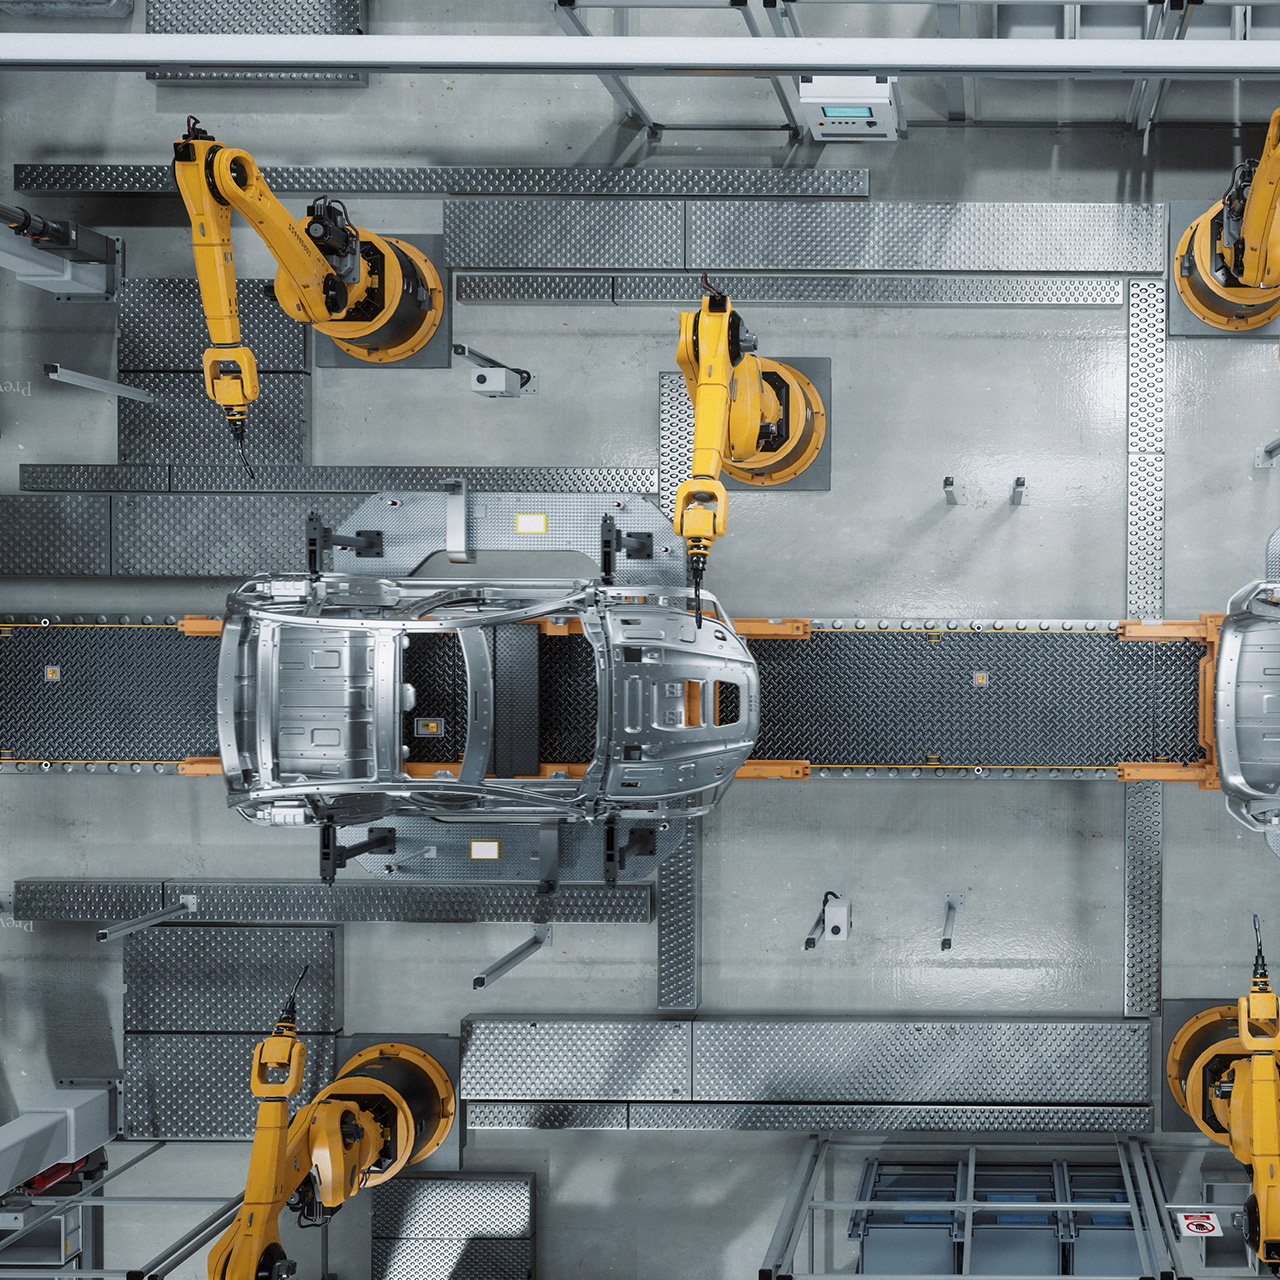 Caricabatterie per carrelli elevatori Mitsubishi: la soluzione ideale per aumentare la produttività